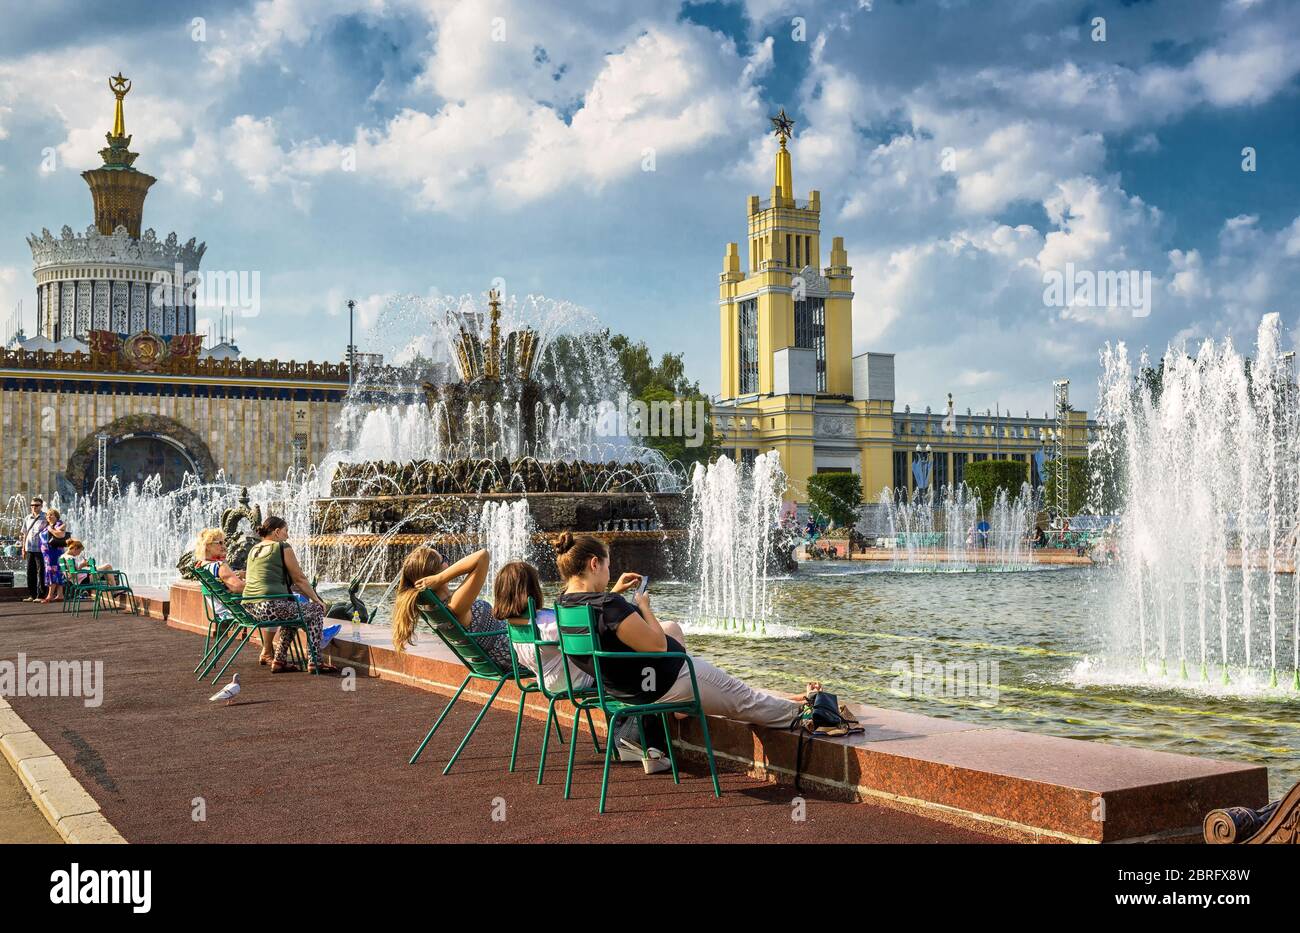 MOSKAU - 29. JULI 2016: Touristen ruhen sich in der Nähe des Steinblumenbrunnens im All-Russia Exhibition Centre (VDNKh) aus. Dieser Brunnen wurde 1954 erbaut. Stockfoto